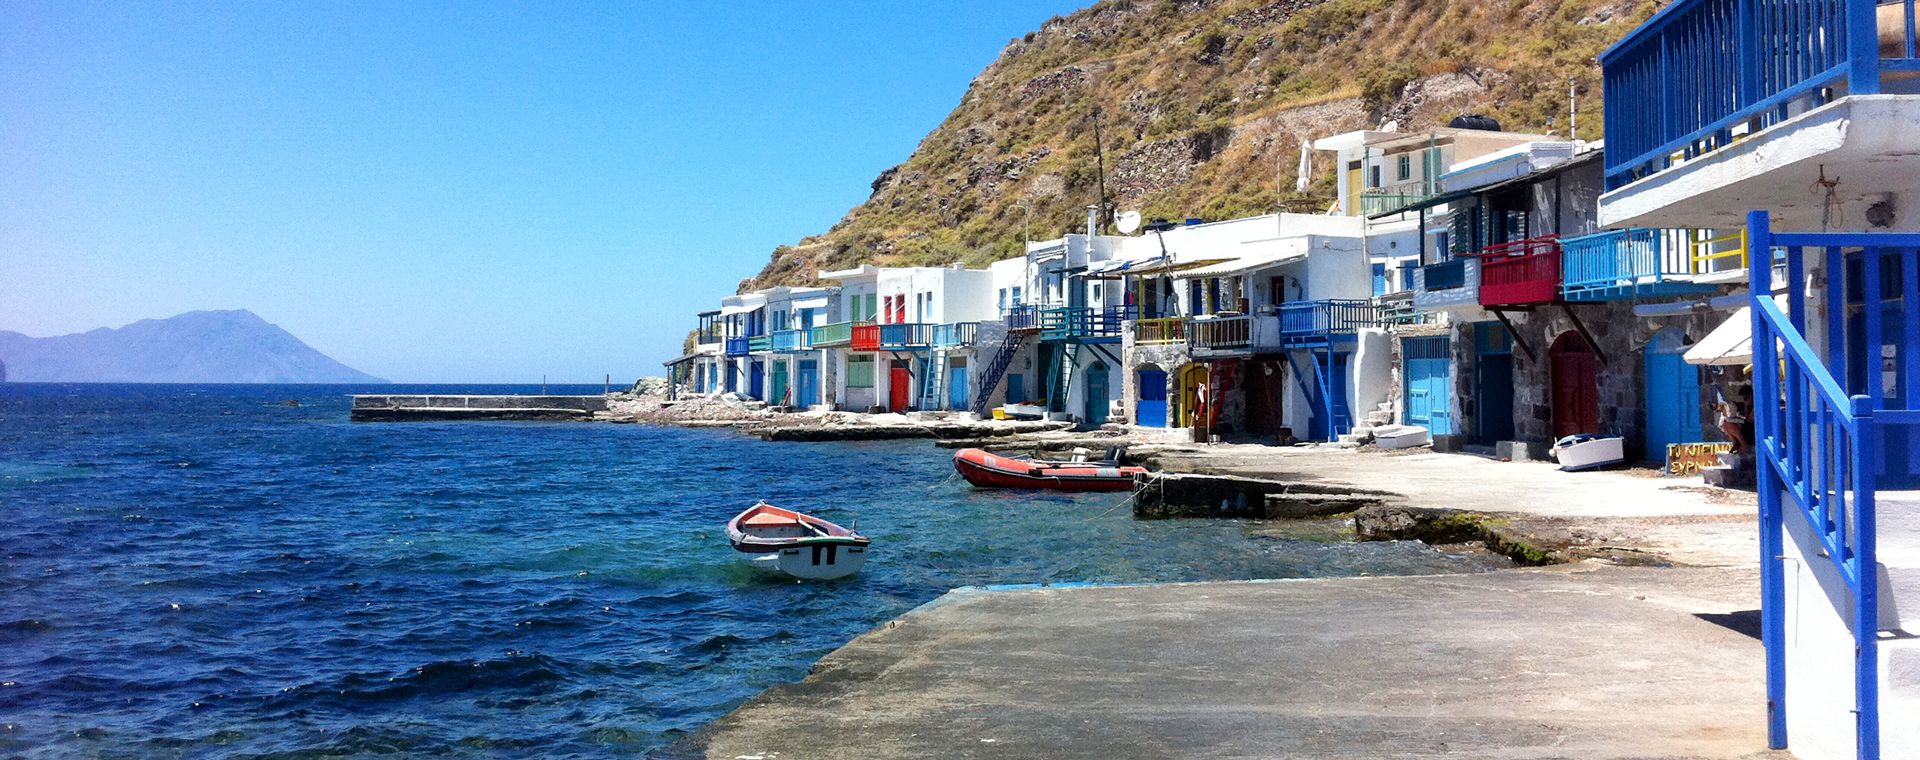 Village de pêcheurs de Klima sur l'île de Milos, Cyclades